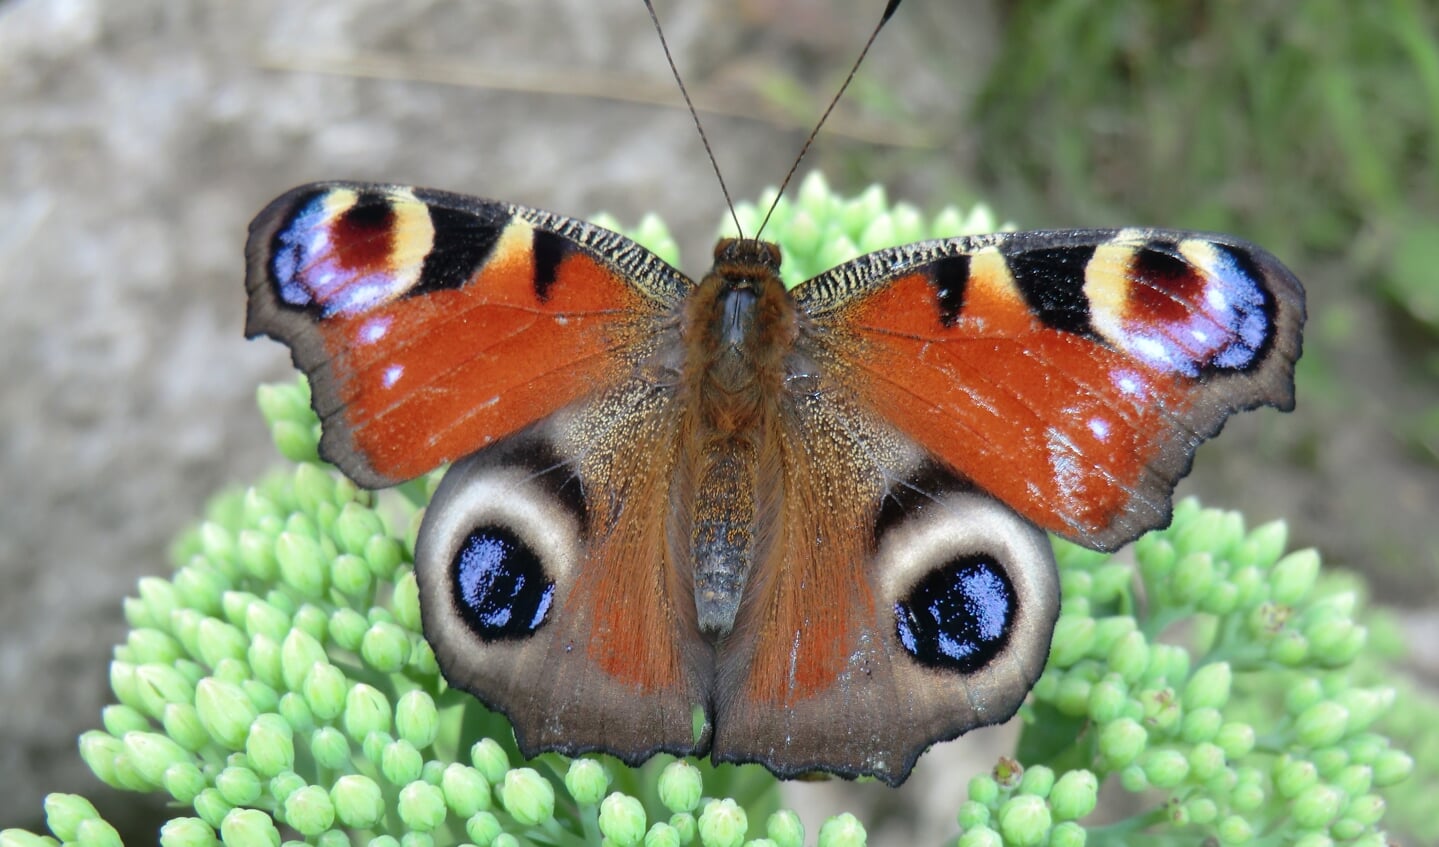 ,,29 juli 2020 Vlindertuin in Harskamp, dit is mijn favoriete vlinder die ook in mijn tuin te zien is. De Dagpauwoog."